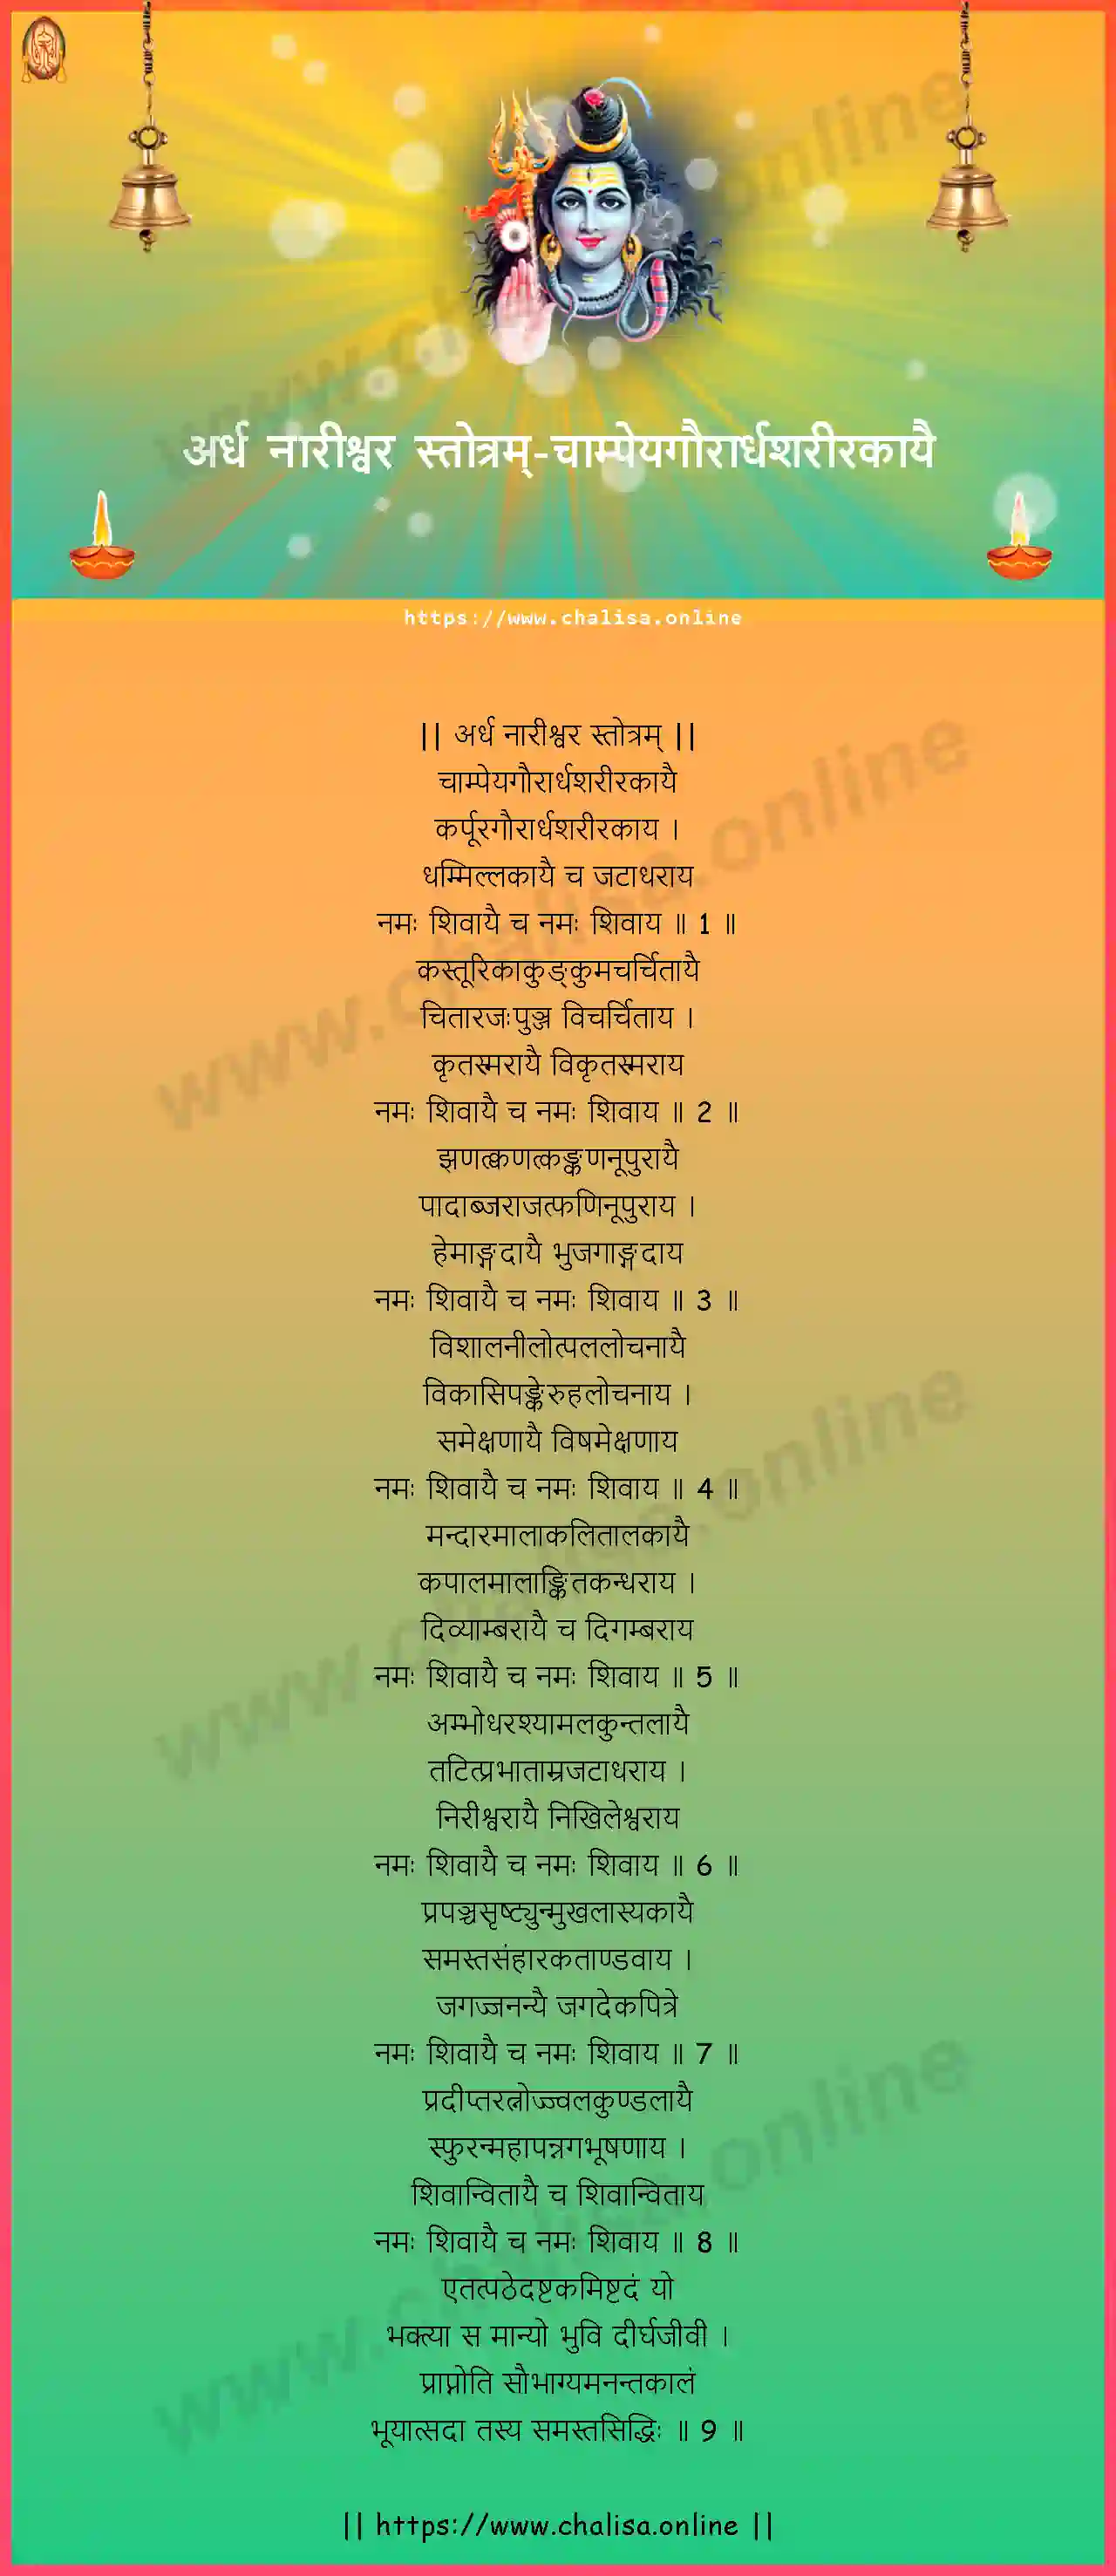 champeyagaurardhasarirakayai-ardha-nareeswara-stotram-devanagari-devanagari-lyrics-download